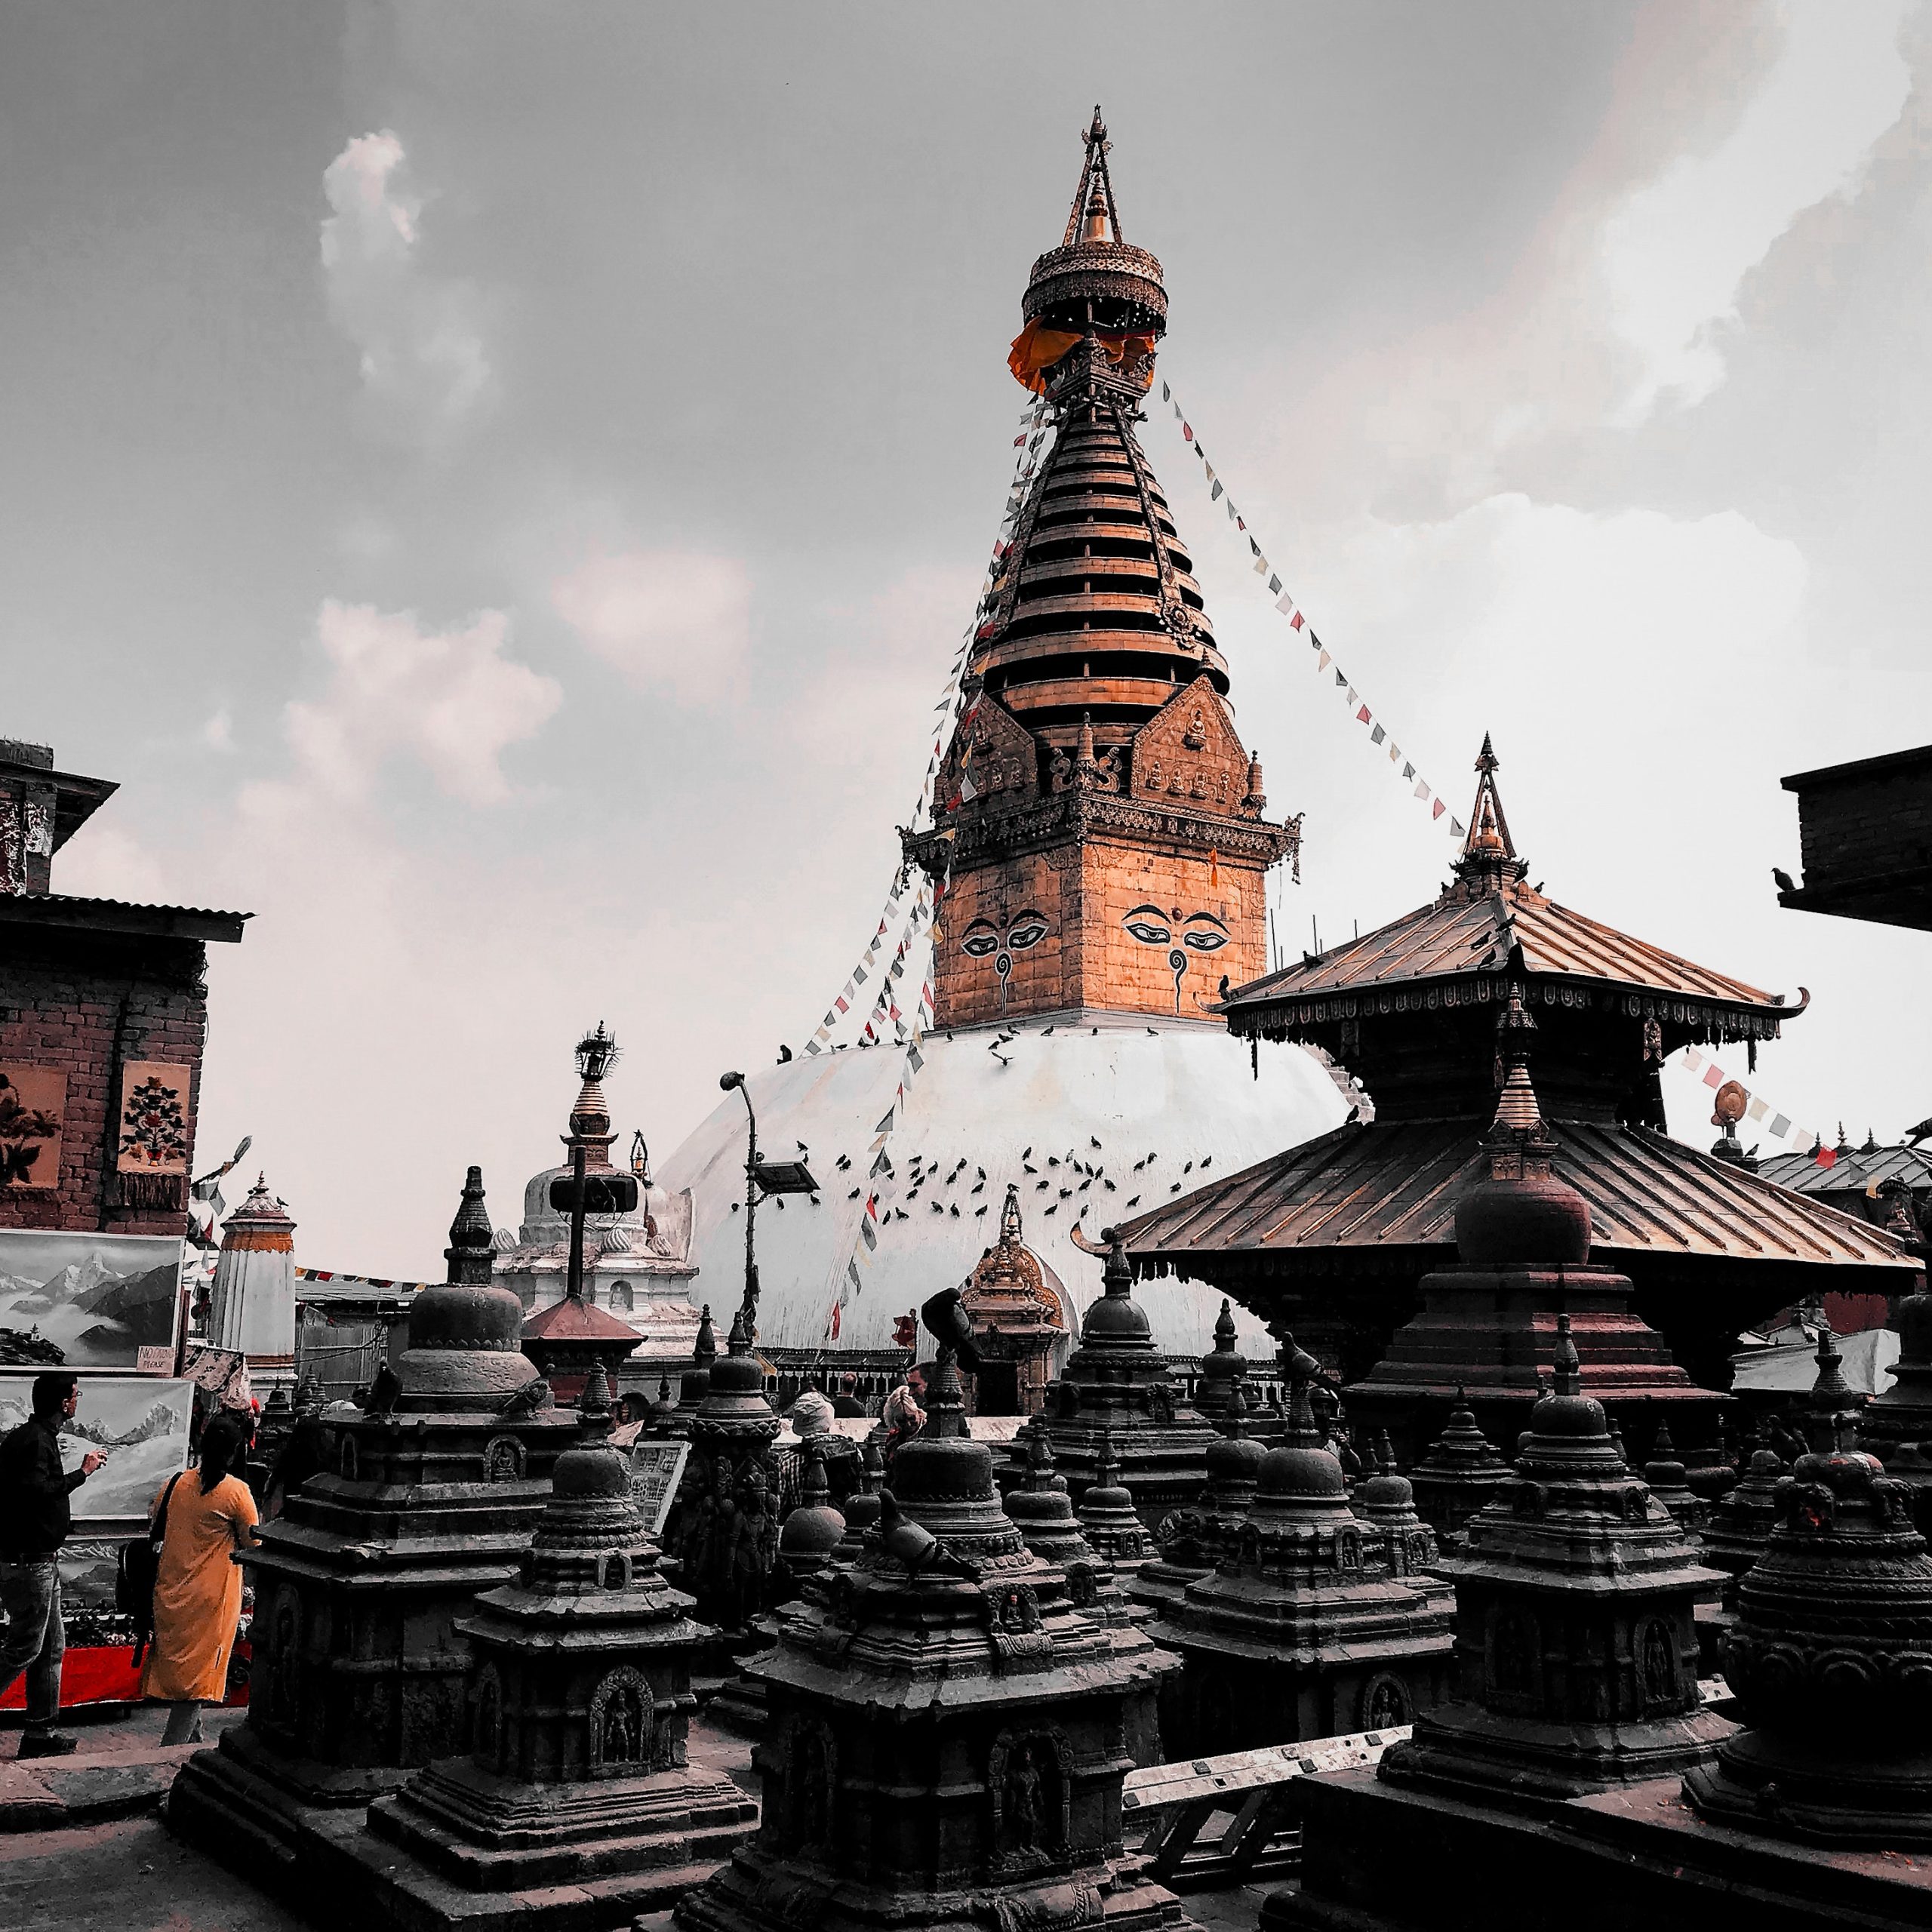 swayambhunath-stupa